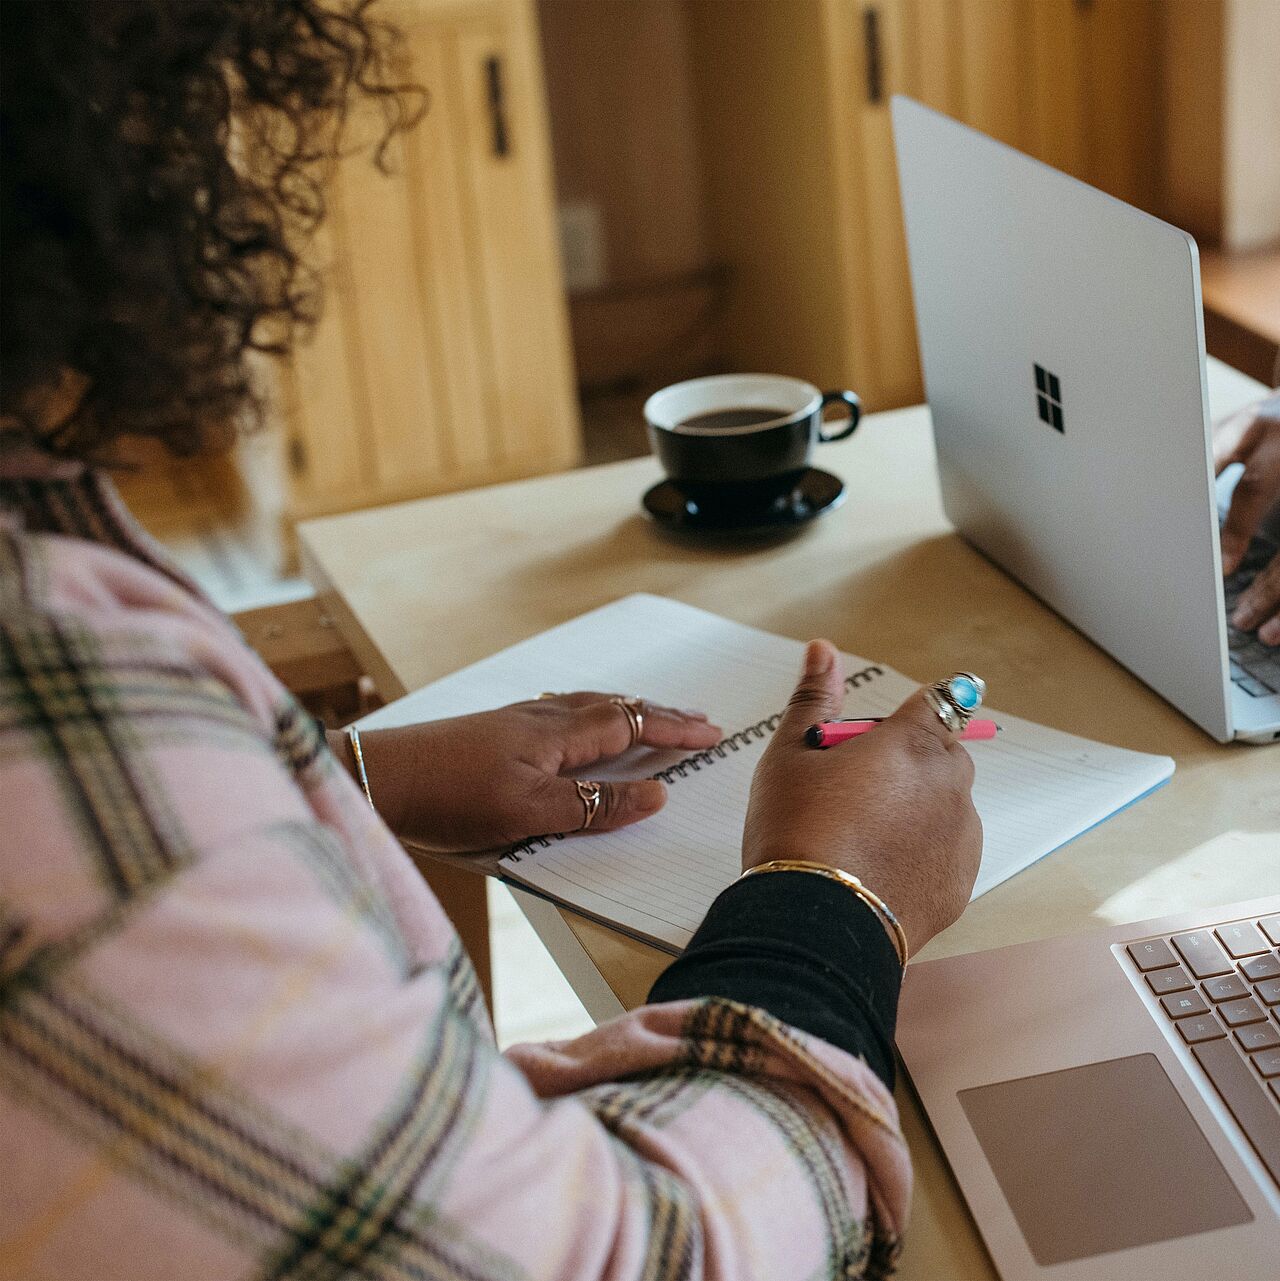 Bild zeigt eine Frau am Schreibtisch wie sie etwas in ein Heft schreibt und zwei Laptops.